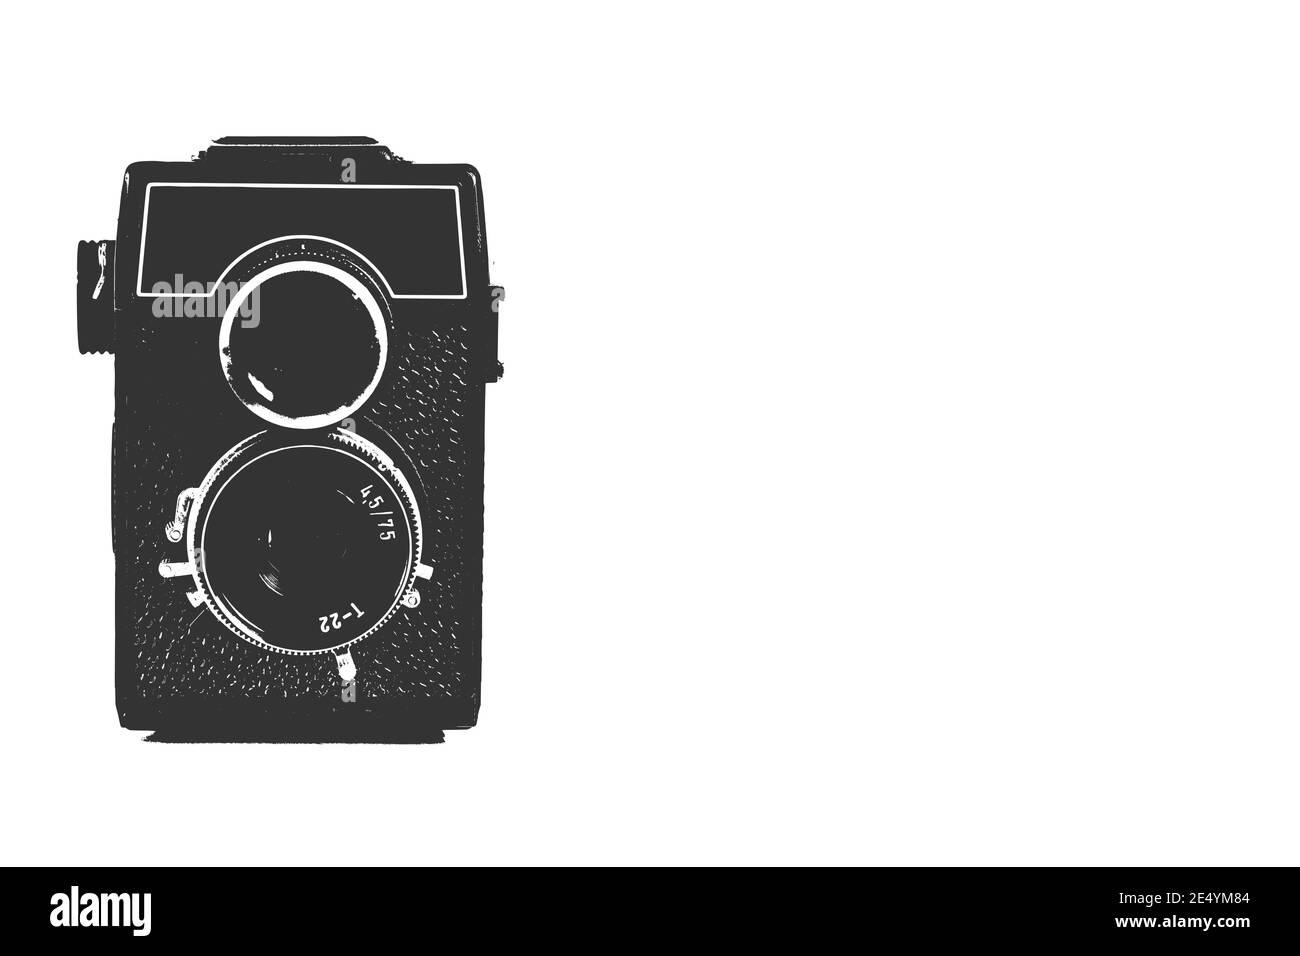 un ancien appareil photo à double objectif dans un style pop Banque D'Images